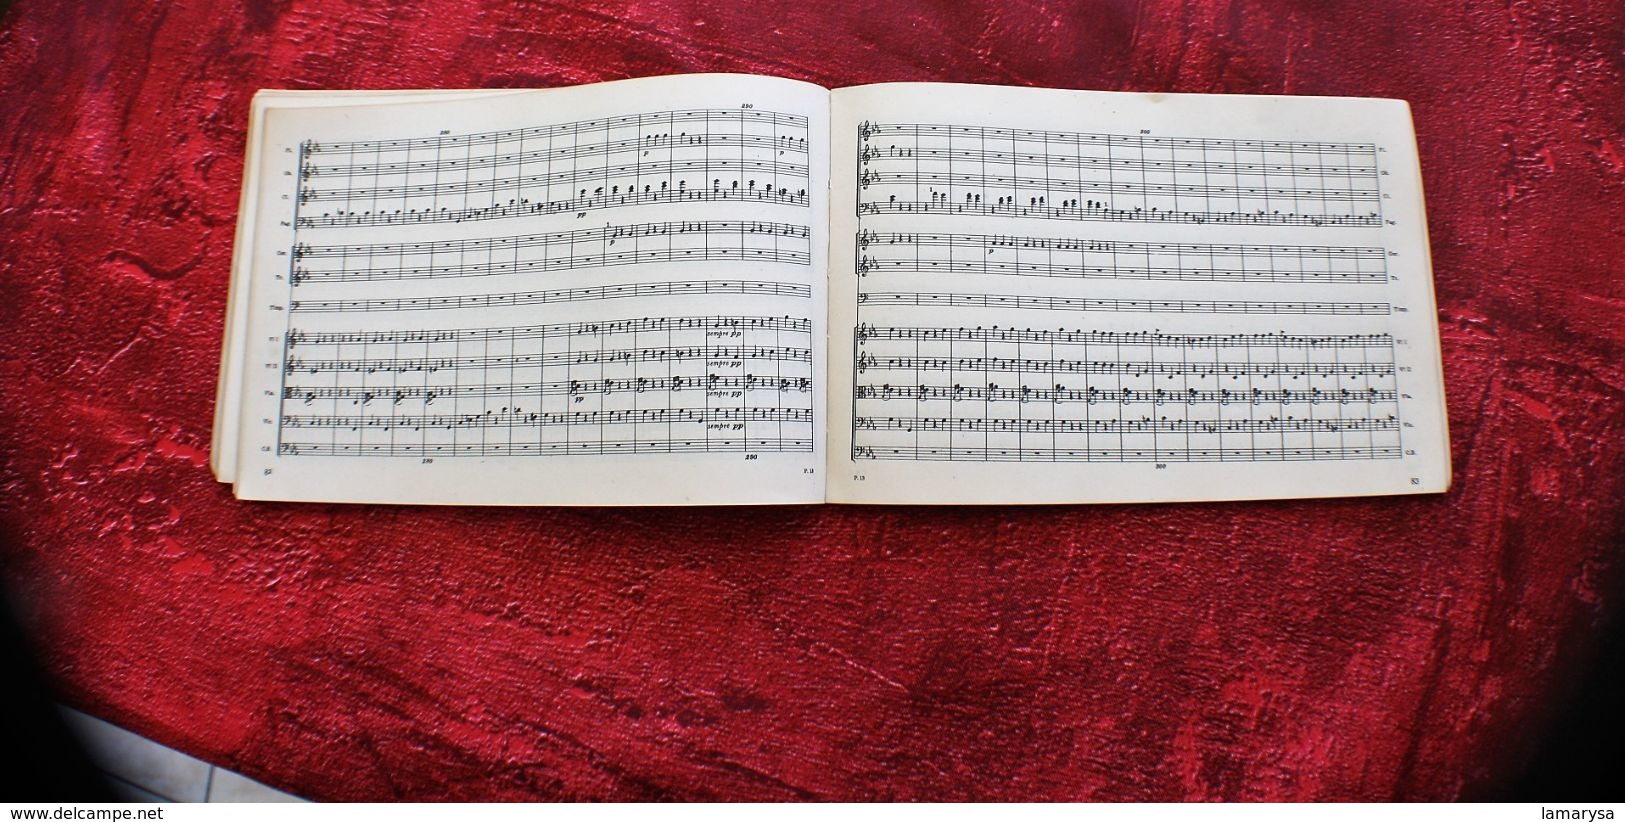 1951 BEETHOVEN SYMPHONY N° 5 IN C MINOR PENGUIN SCORES 12-3/6-OP 67-Musique & Instruments Partition Musique classique